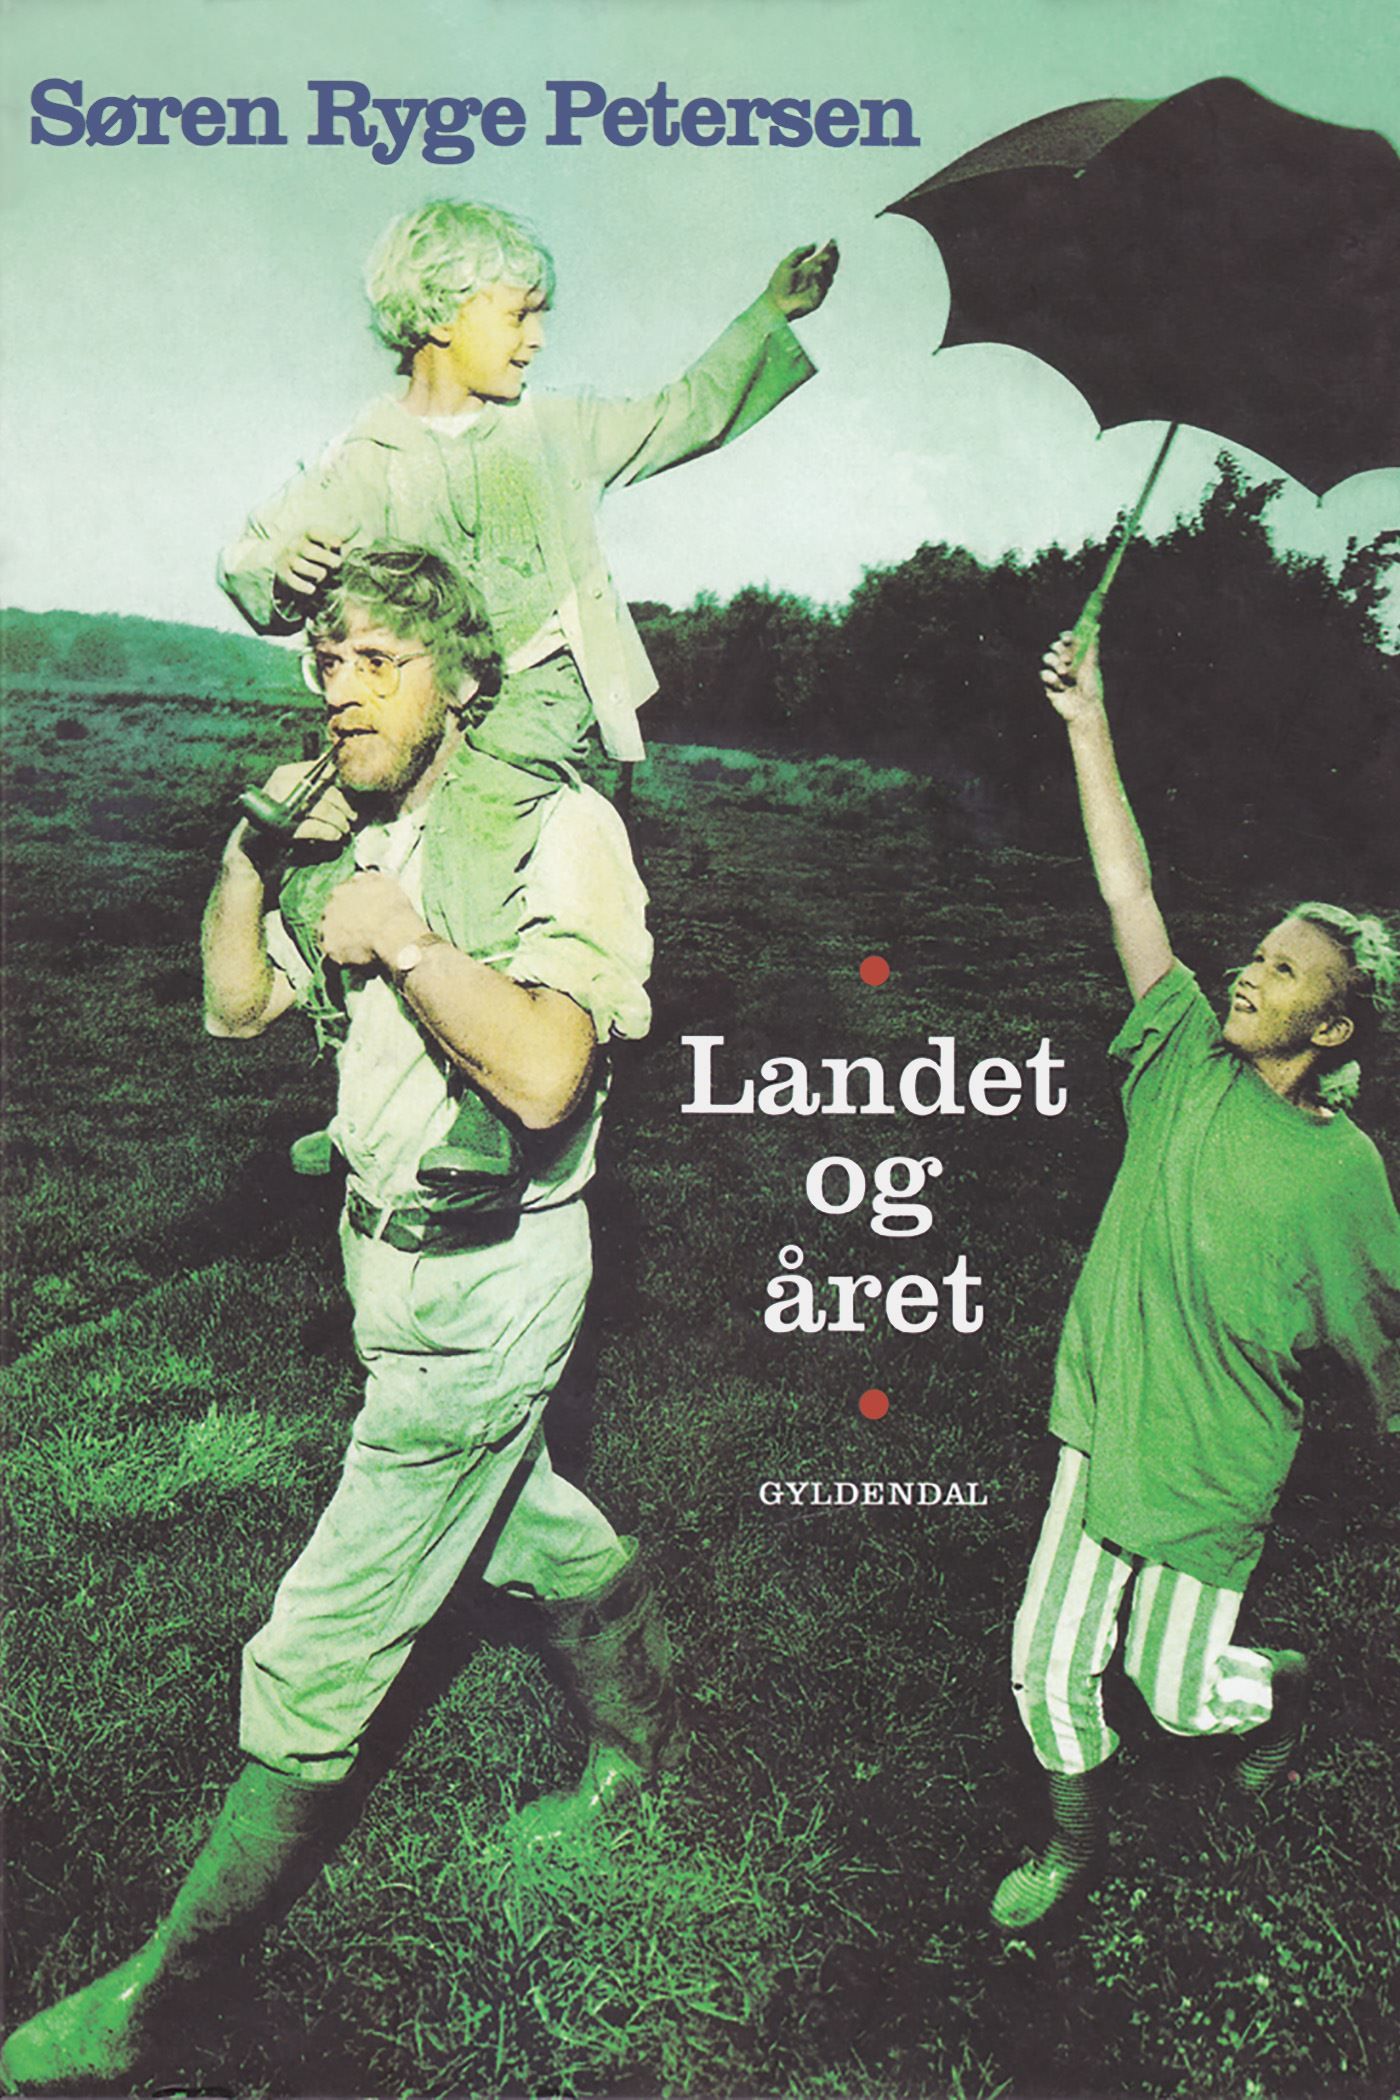 Landet og året, audiobook by Søren Ryge Petersen